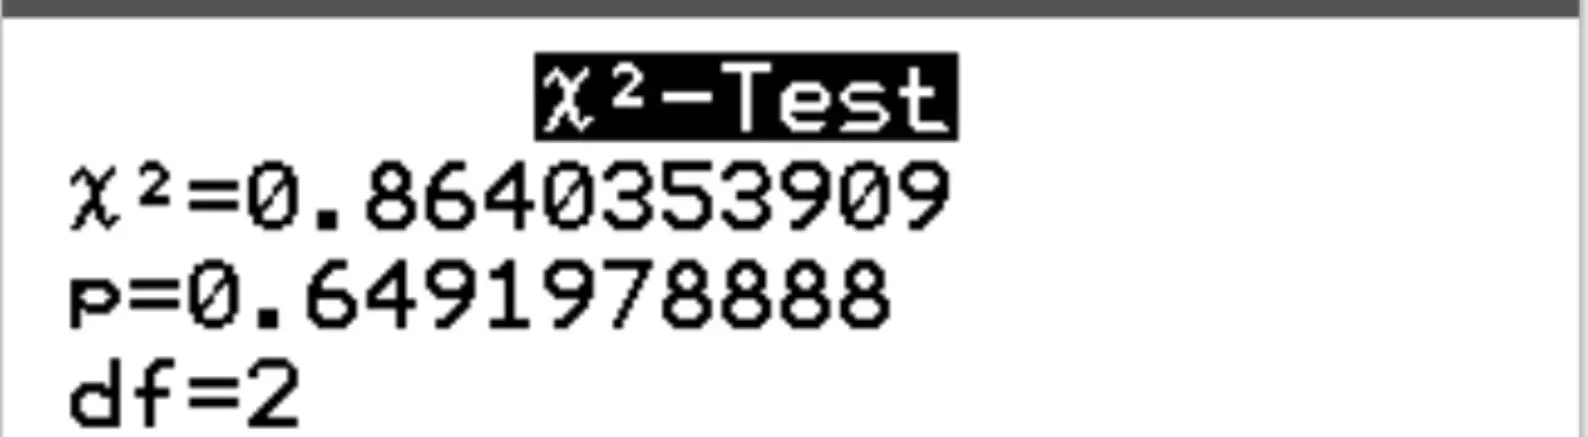 Saída do teste de independência do qui-quadrado em uma calculadora TI-84